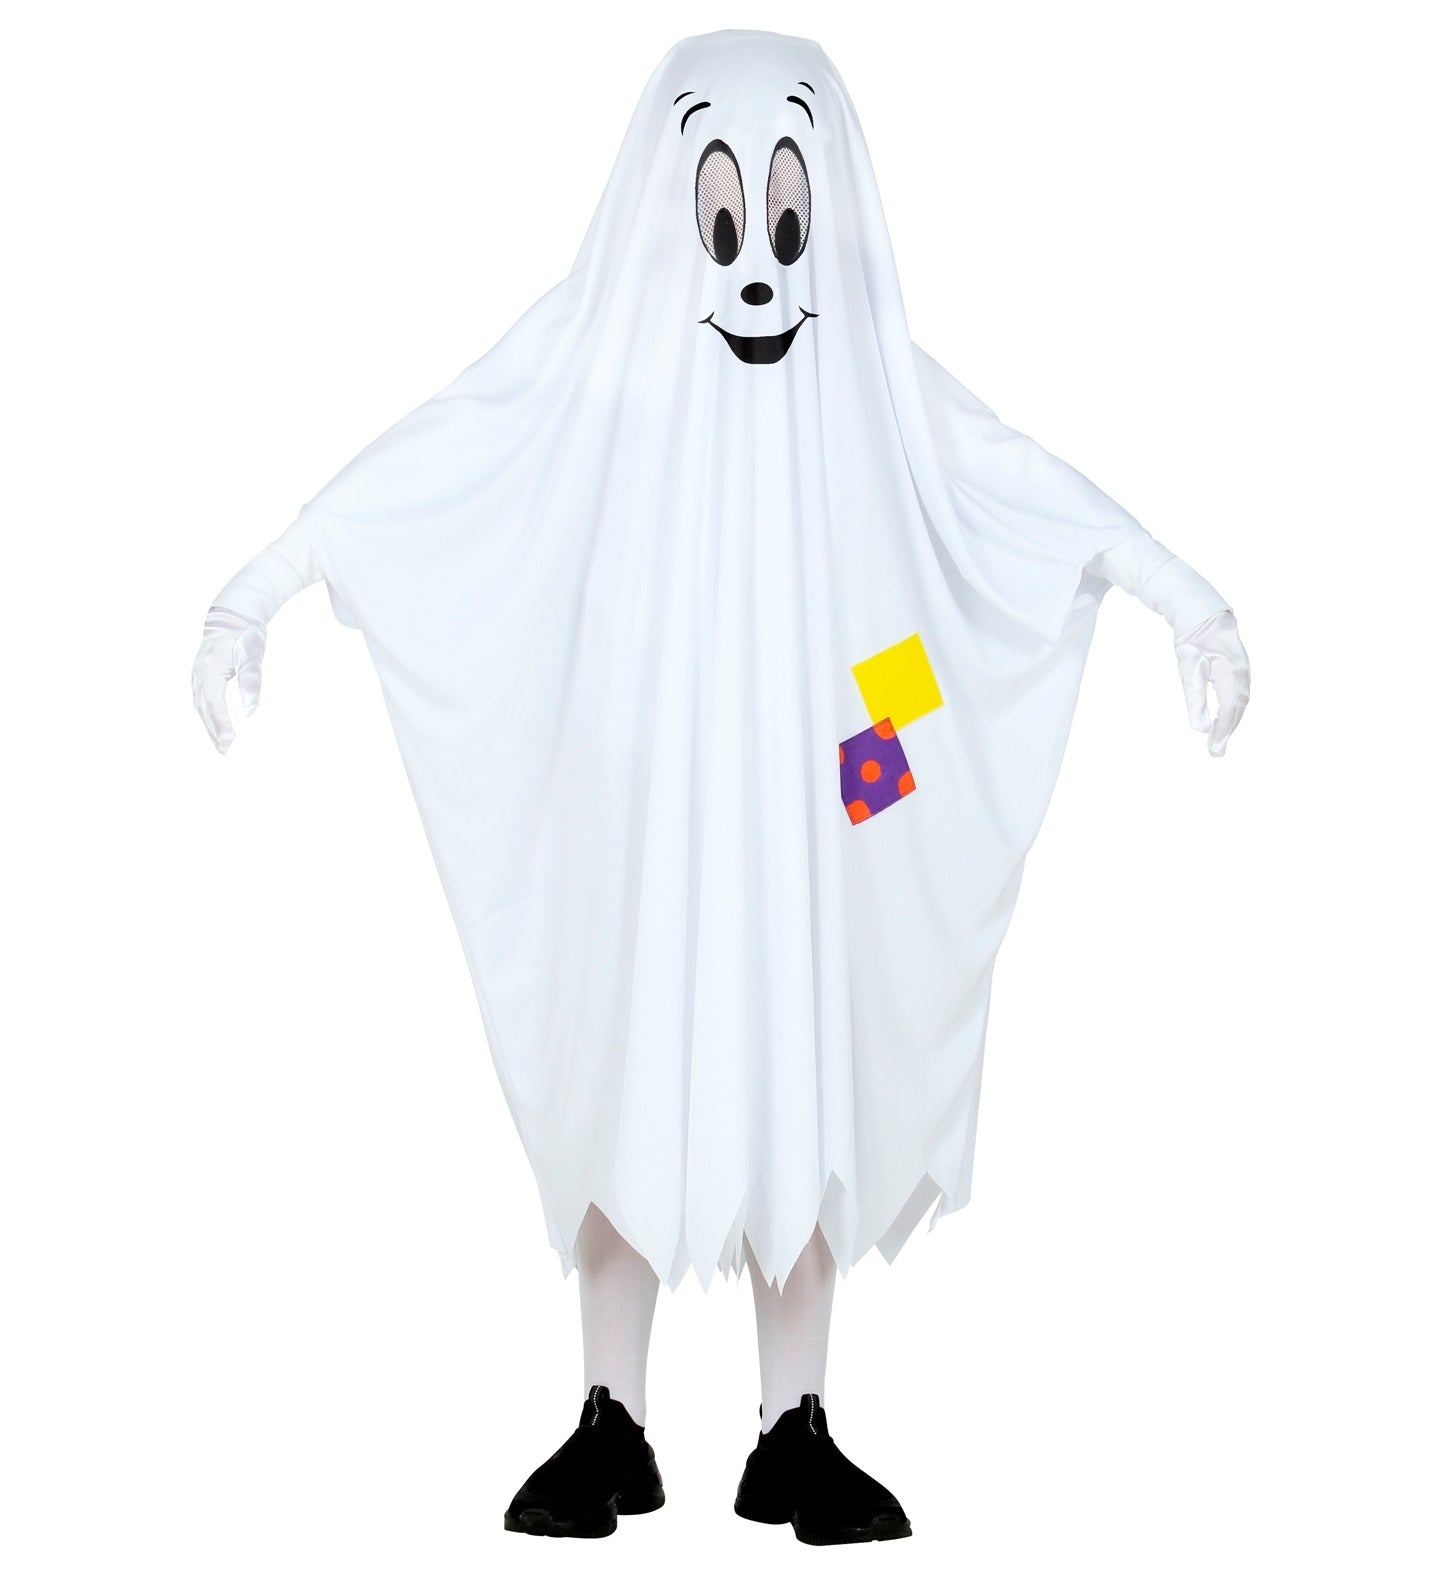 Widmann - Spook & Skelet Kostuum - Het Vriendelijke Spookje Kind Kostuum - wit / beige - Maat 128 - Halloween - Verkleedkleding